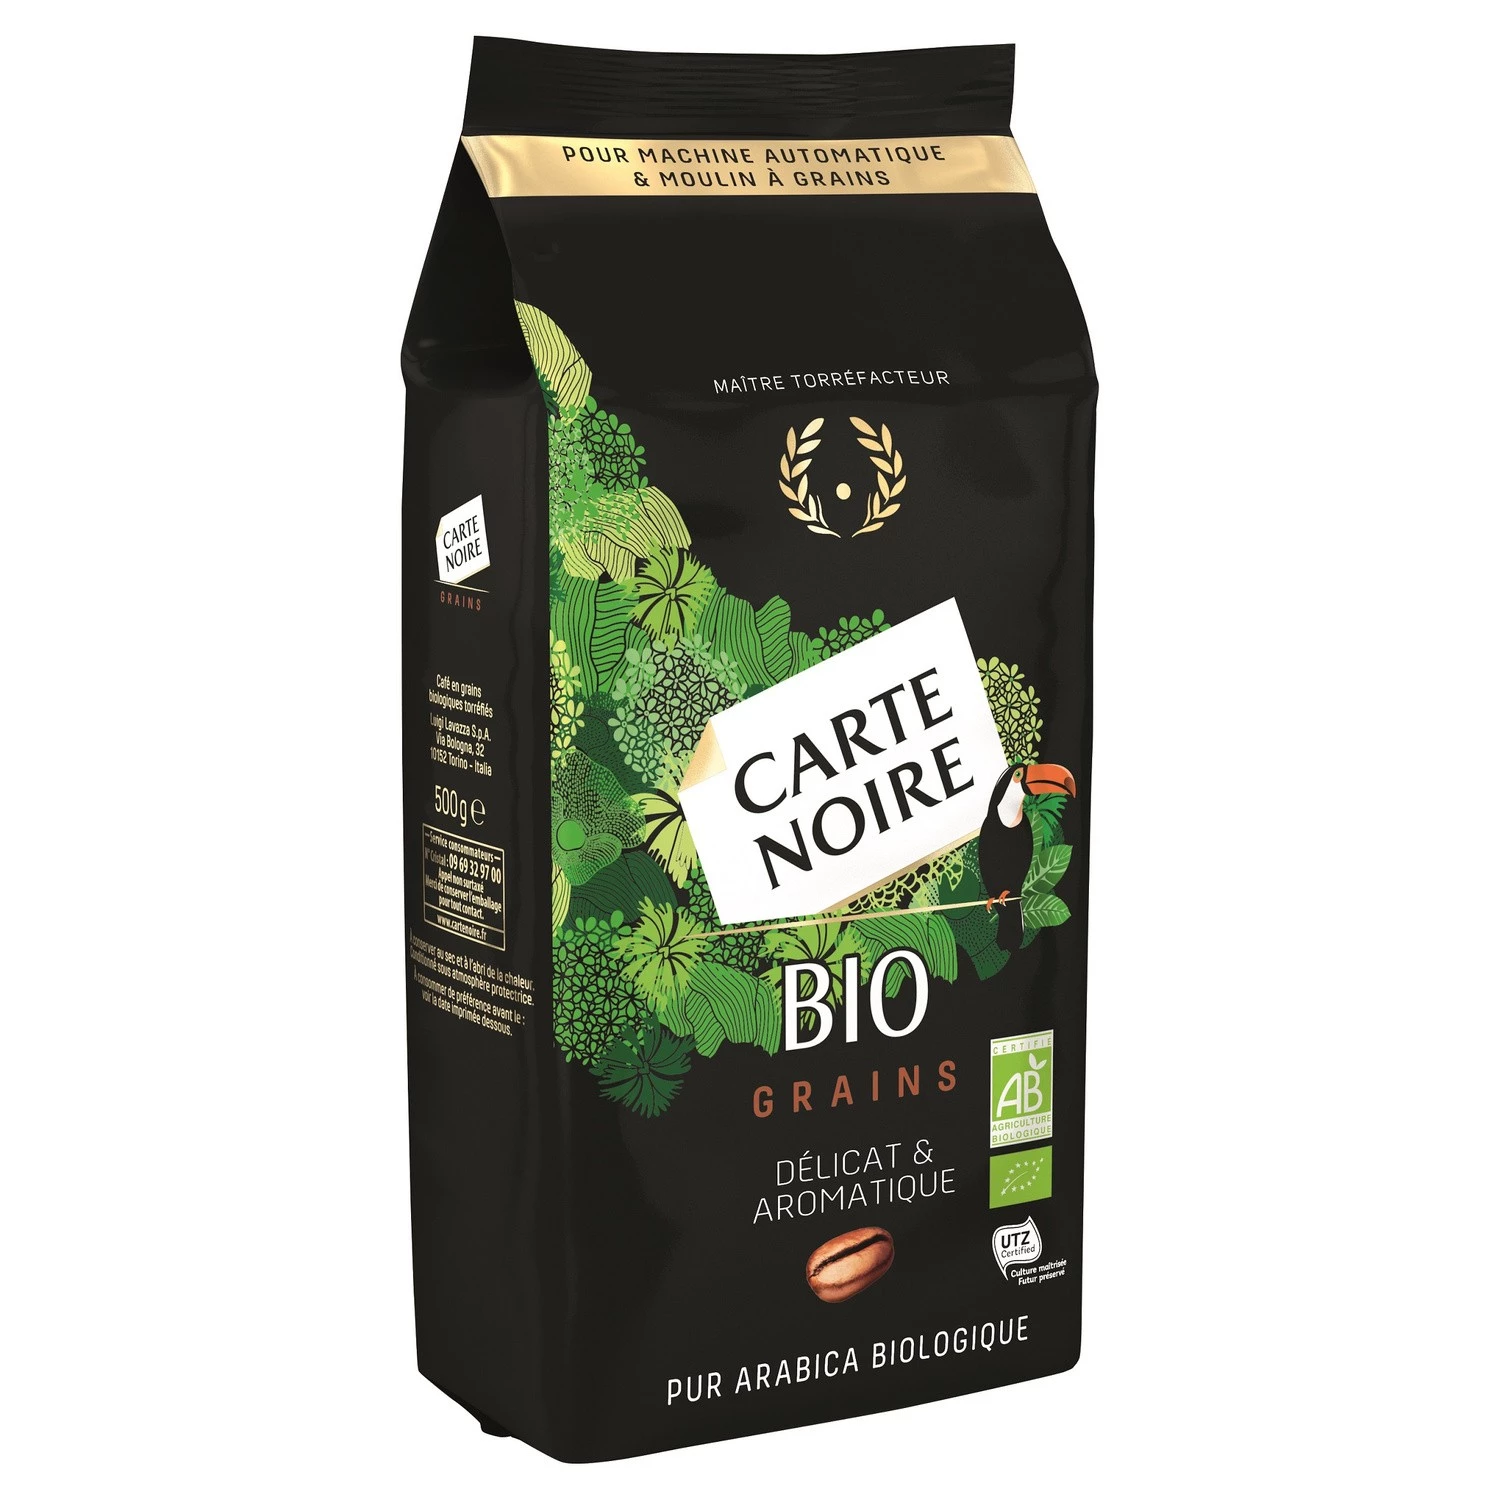 Fijne en aromatische biologische koffiebonen 500g - CARTE NOIRE